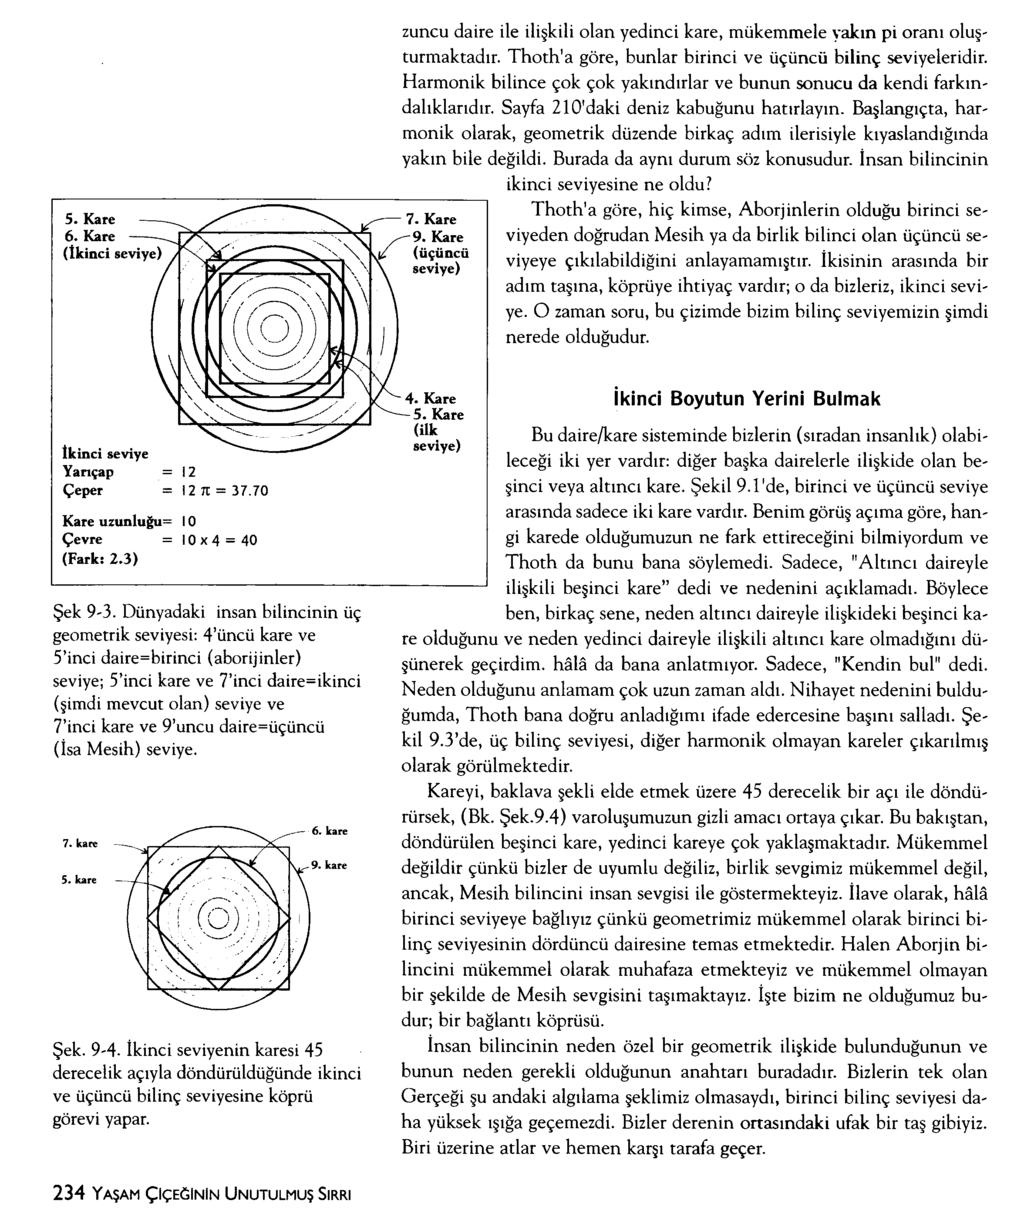 5. Kare 6. Kare (İkinci seviye) zuncu daire ile ilişkili olan yedinci kare, mükemmele yakın pi oranı oluşturmaktadır. Thoth'a göre, bunlar birinci ve üçüncü bilinç seviyeleridir.